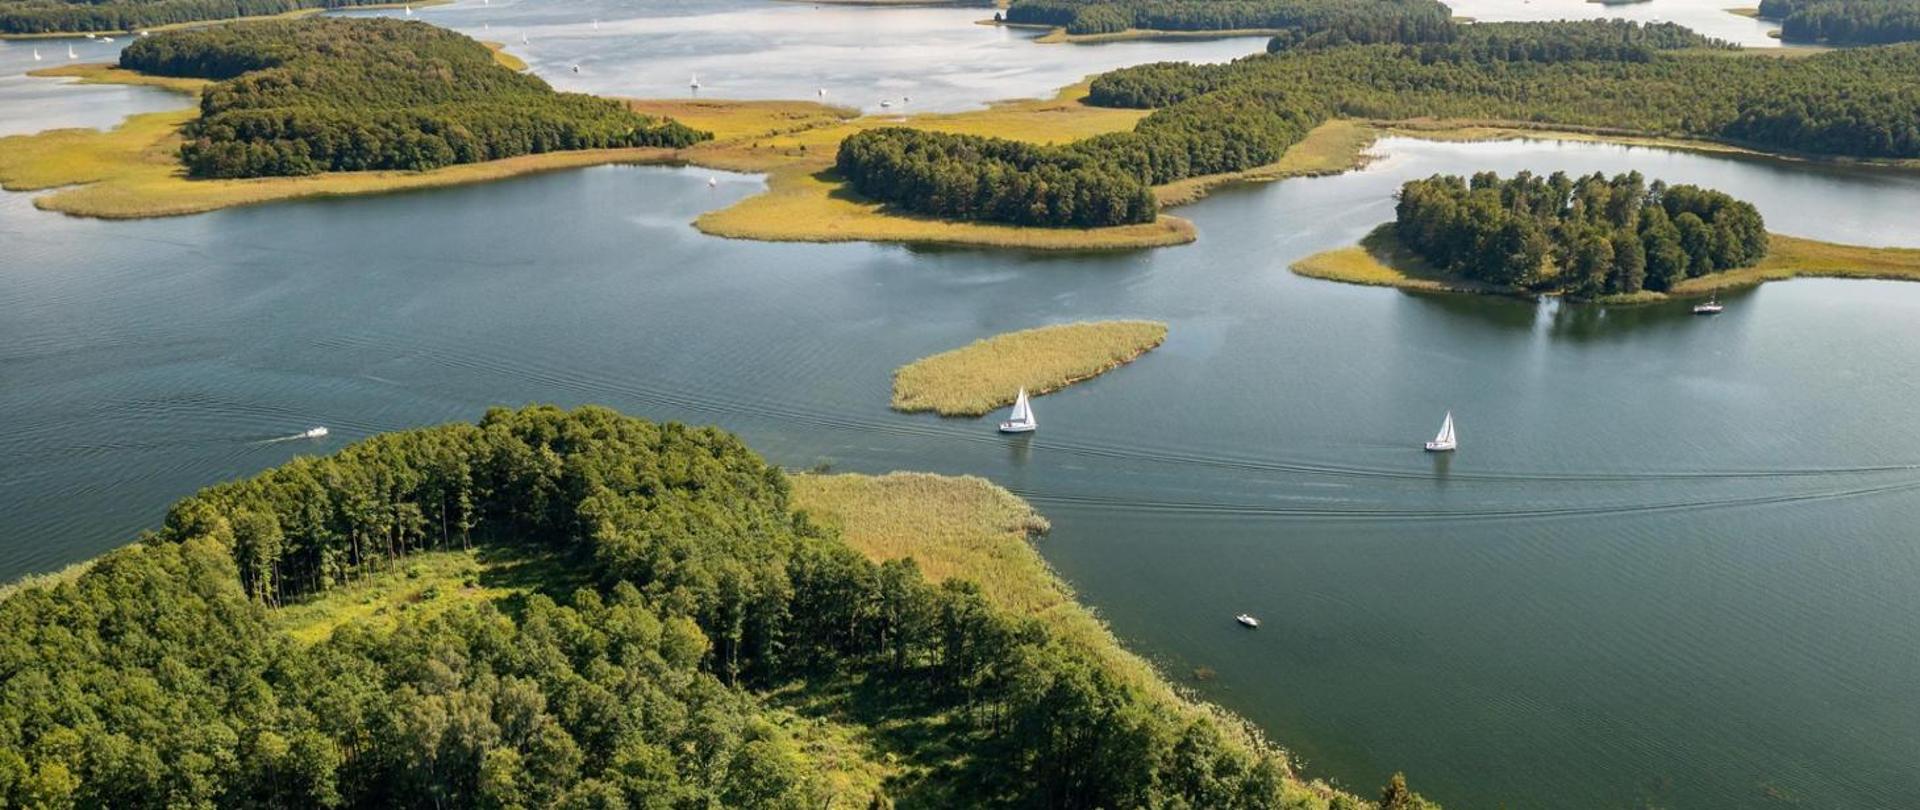 Panorama. Widok na jezioro i porośnięte lasem wyspy na jeziorze. Po jeziorze pływają białe żaglówki.